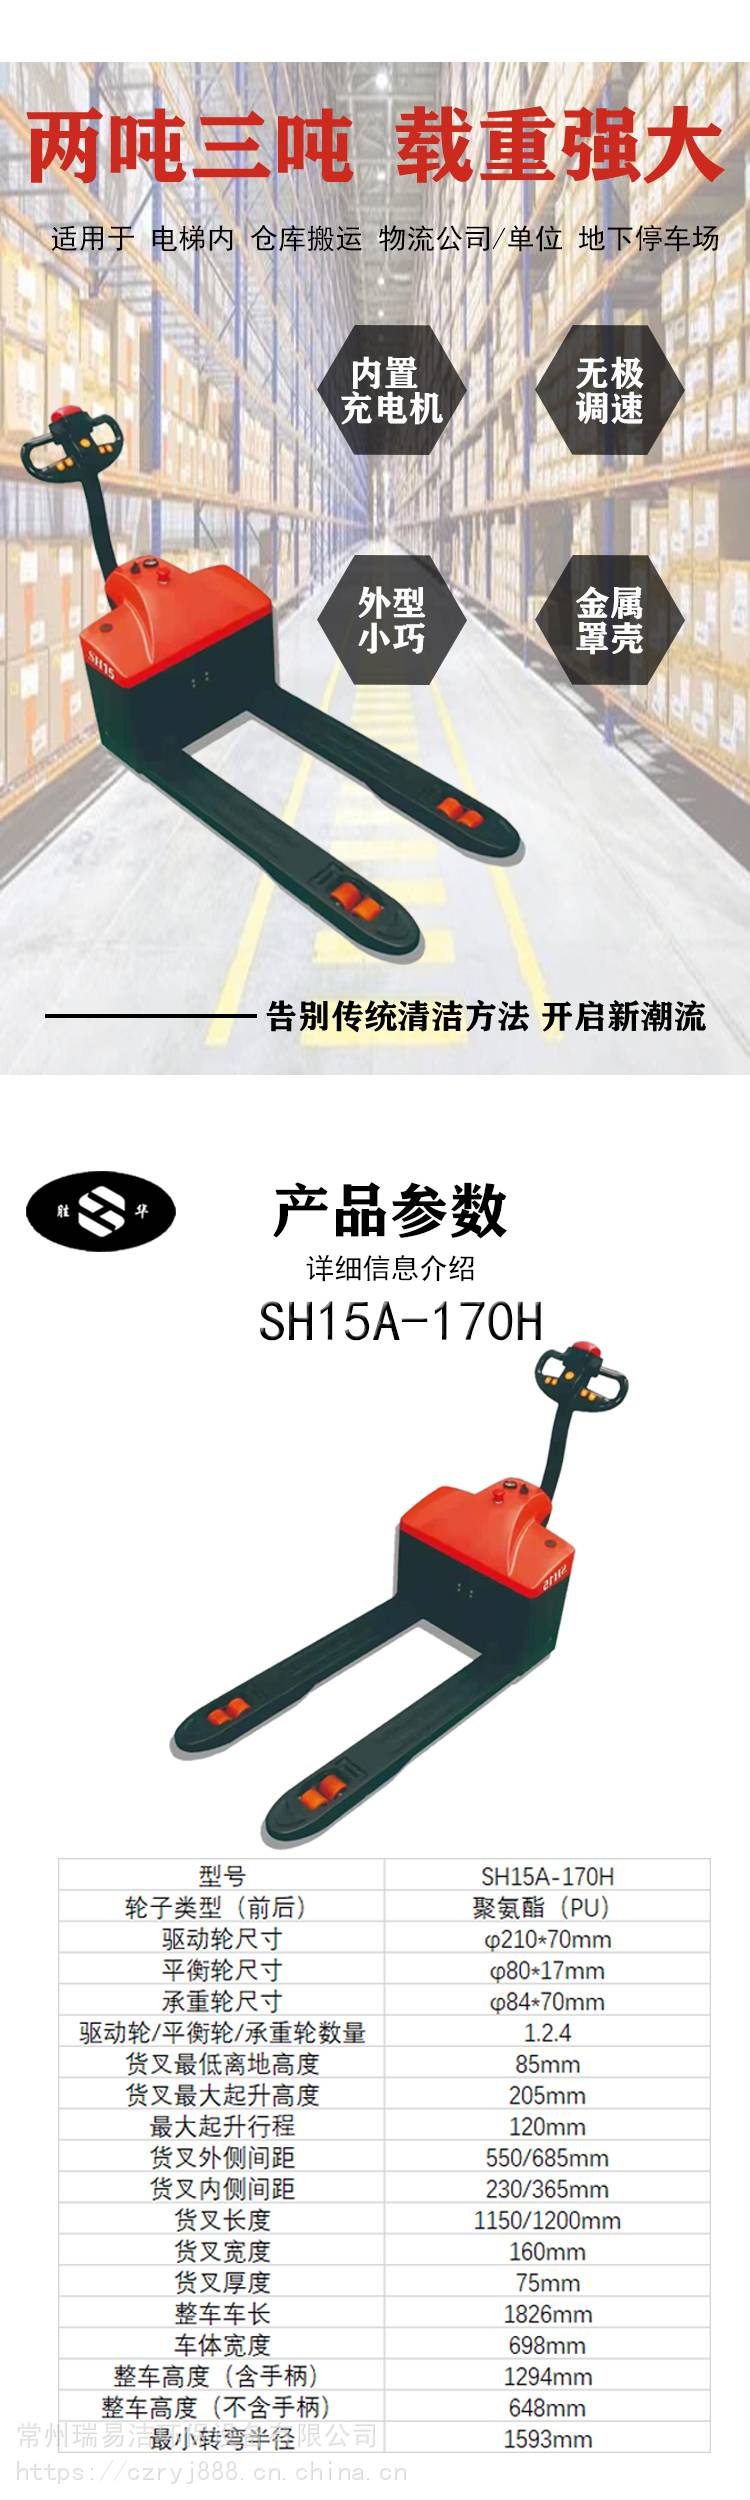 胜华工业用驾驶式扫地车 SH-1450电动地面保洁清洗车